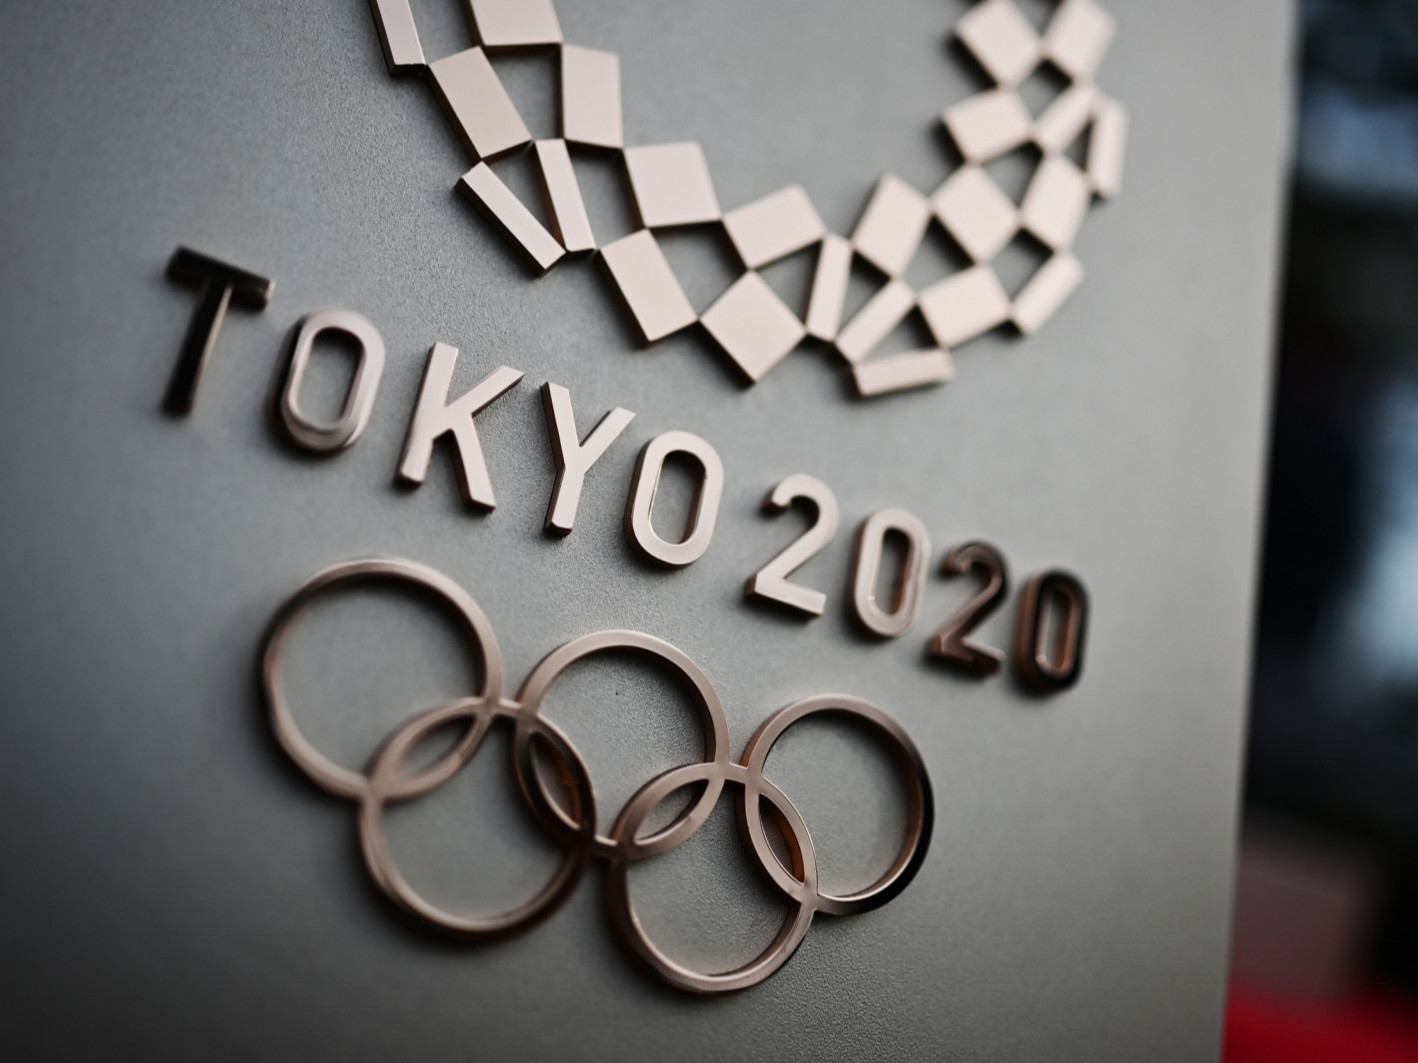 Оросын хакерууд Токиогийн олимпийг үймүүлэхээр "онилж" байжээ